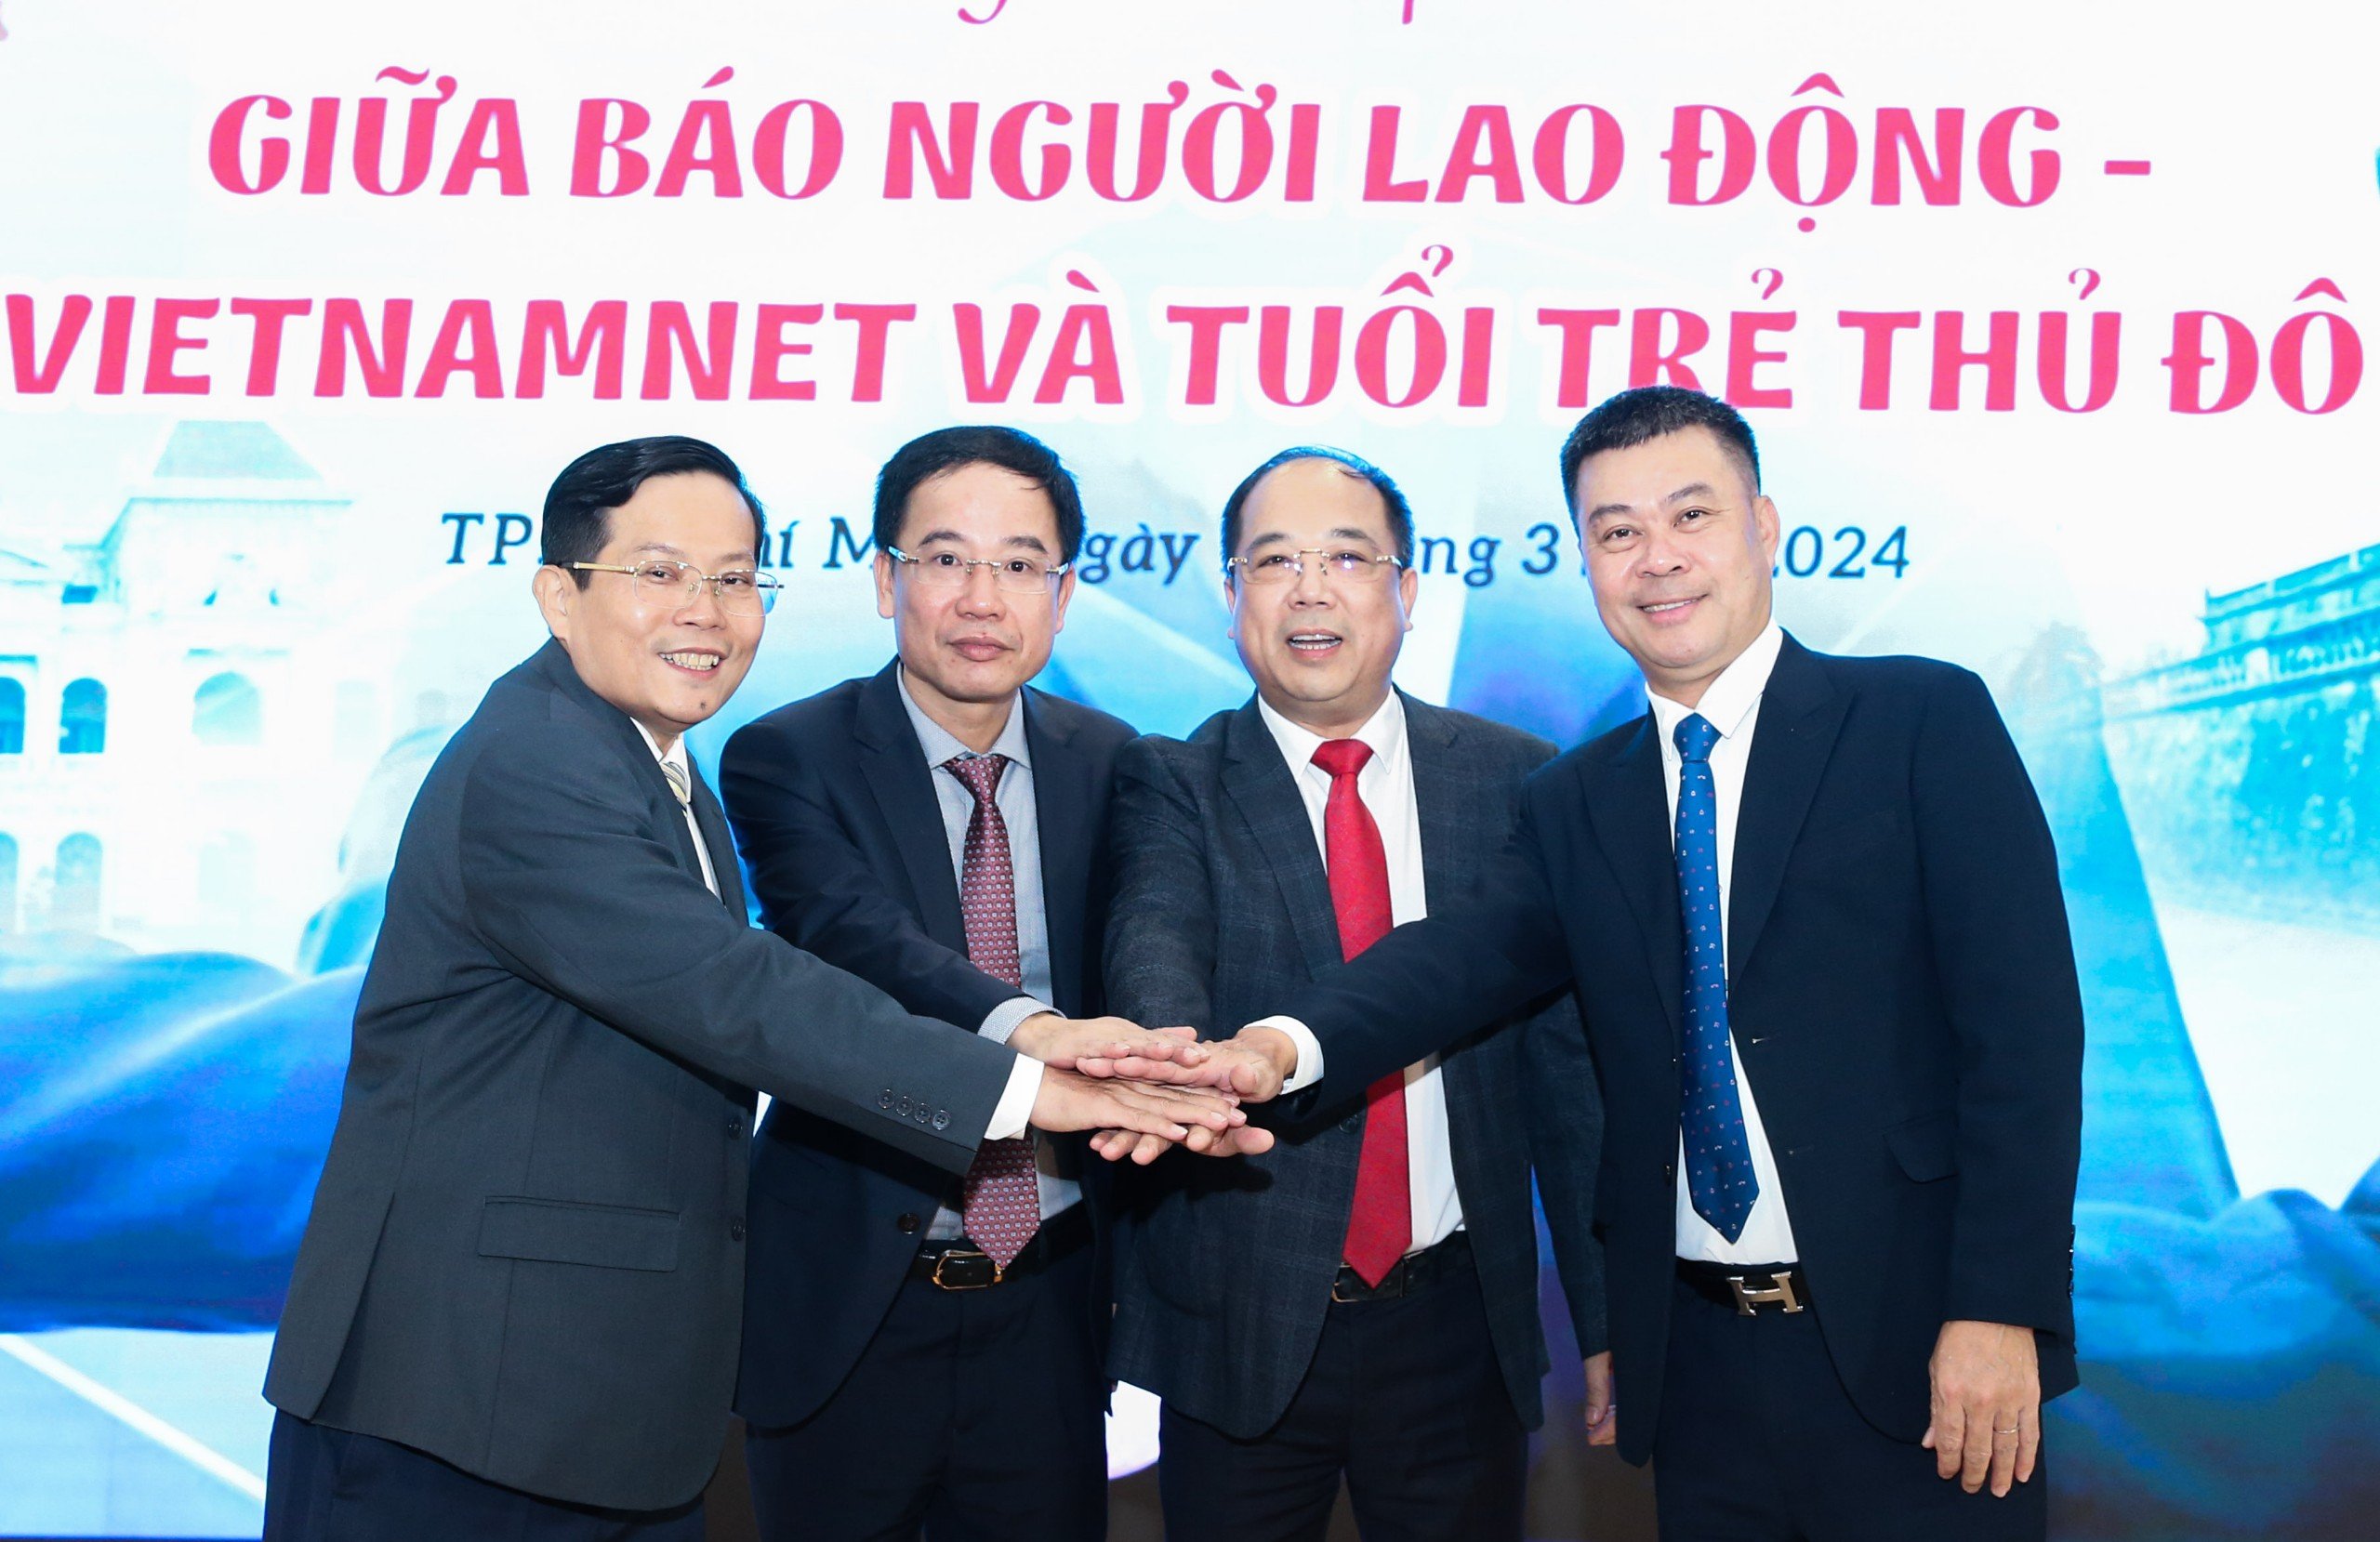 Báo Người Lao Động, Báo VietNamNet, Báo Tuổi trẻ Thủ đô ký kết hợp tác- Ảnh 6.